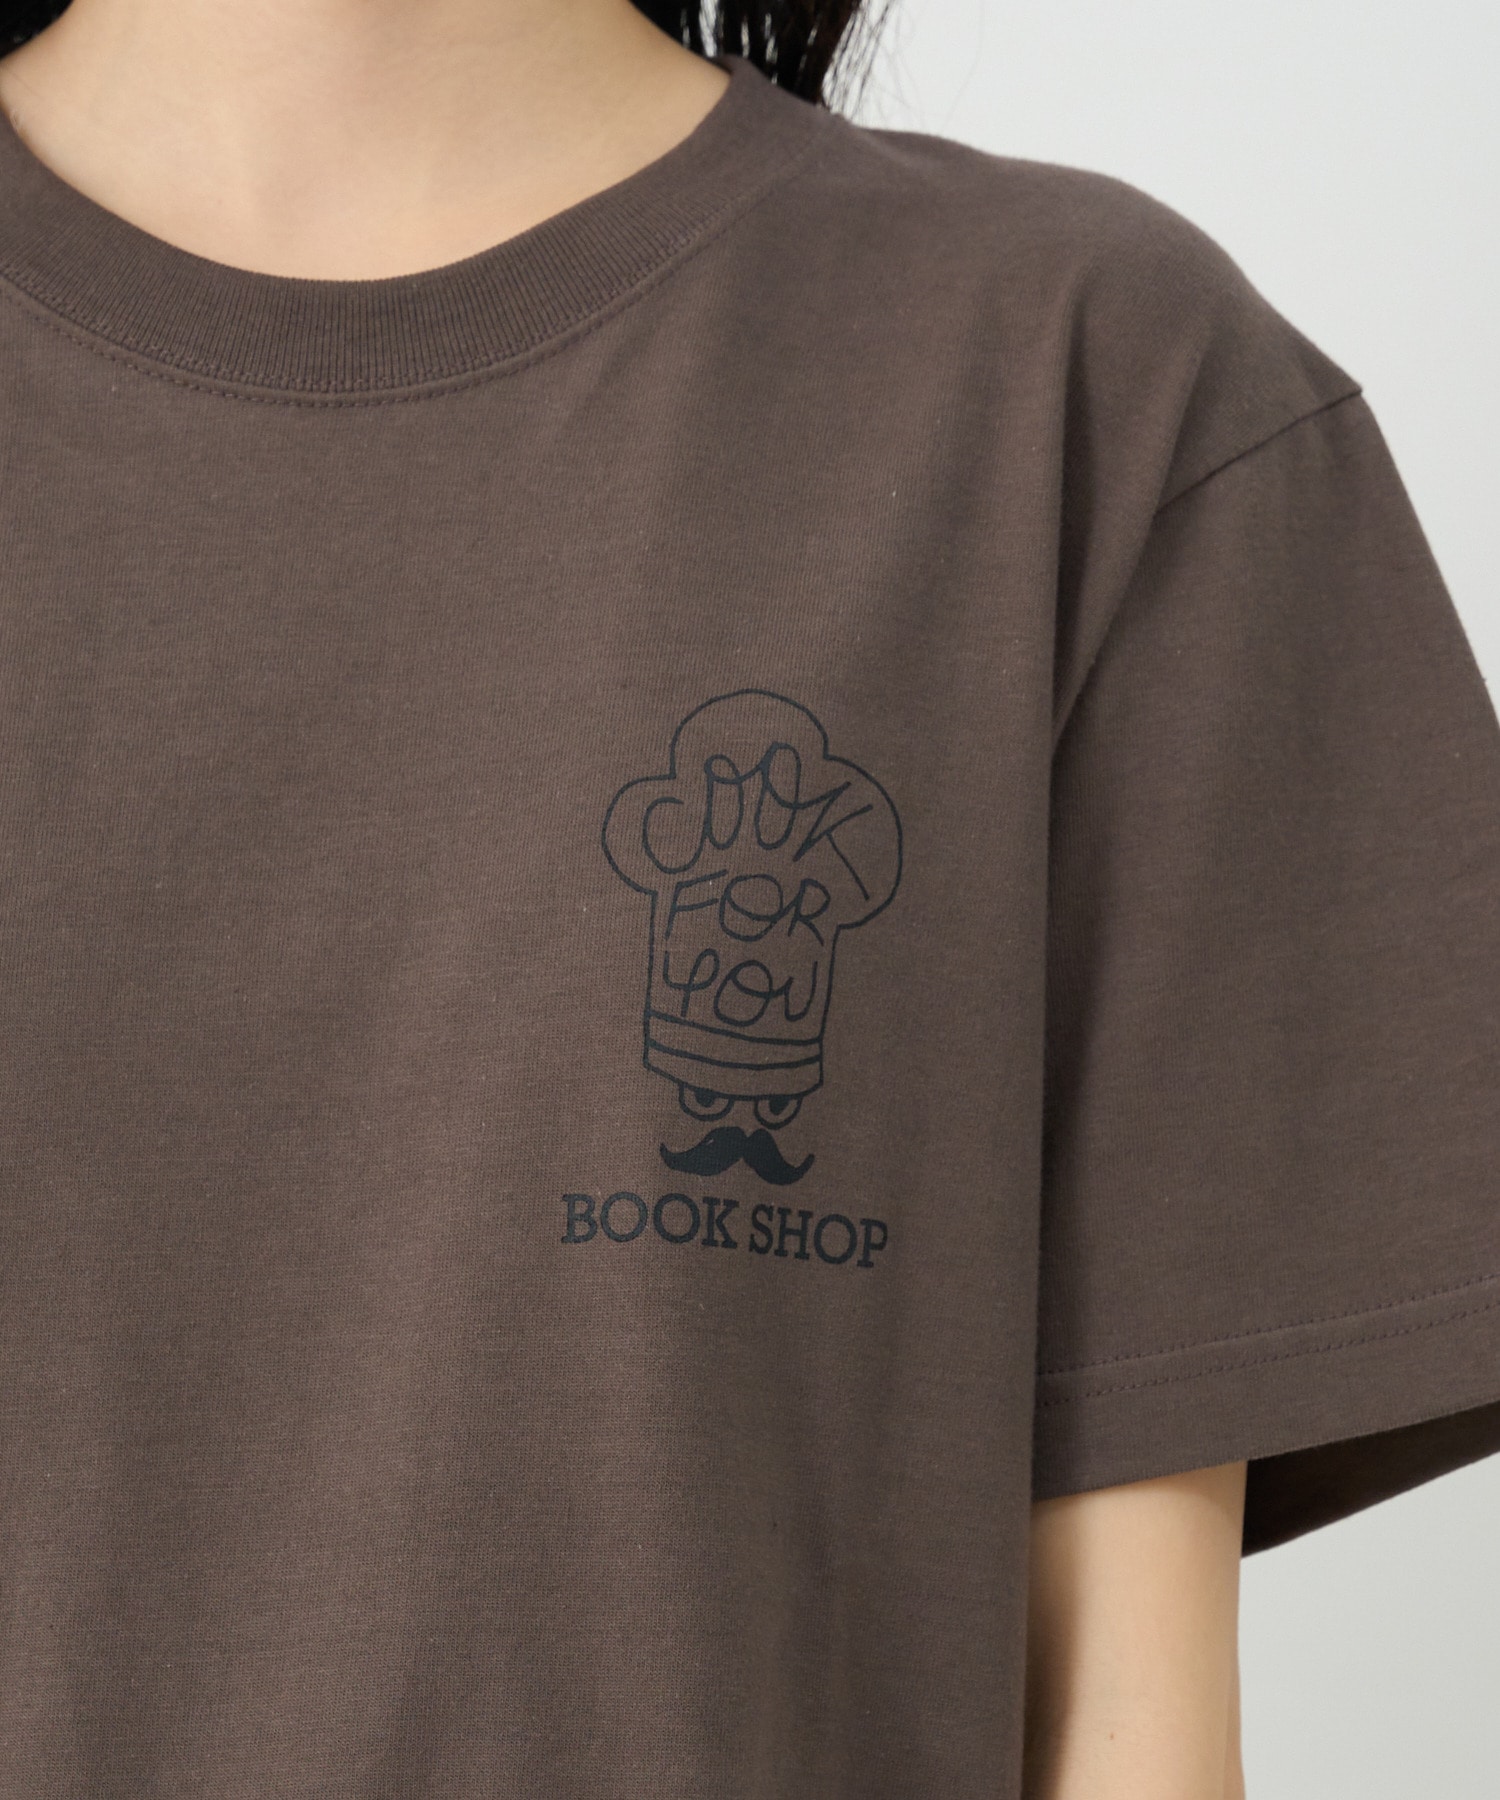 【congés payés】Bob FoundationコラボTシャツ 詳細画像 チャコールグレー 19